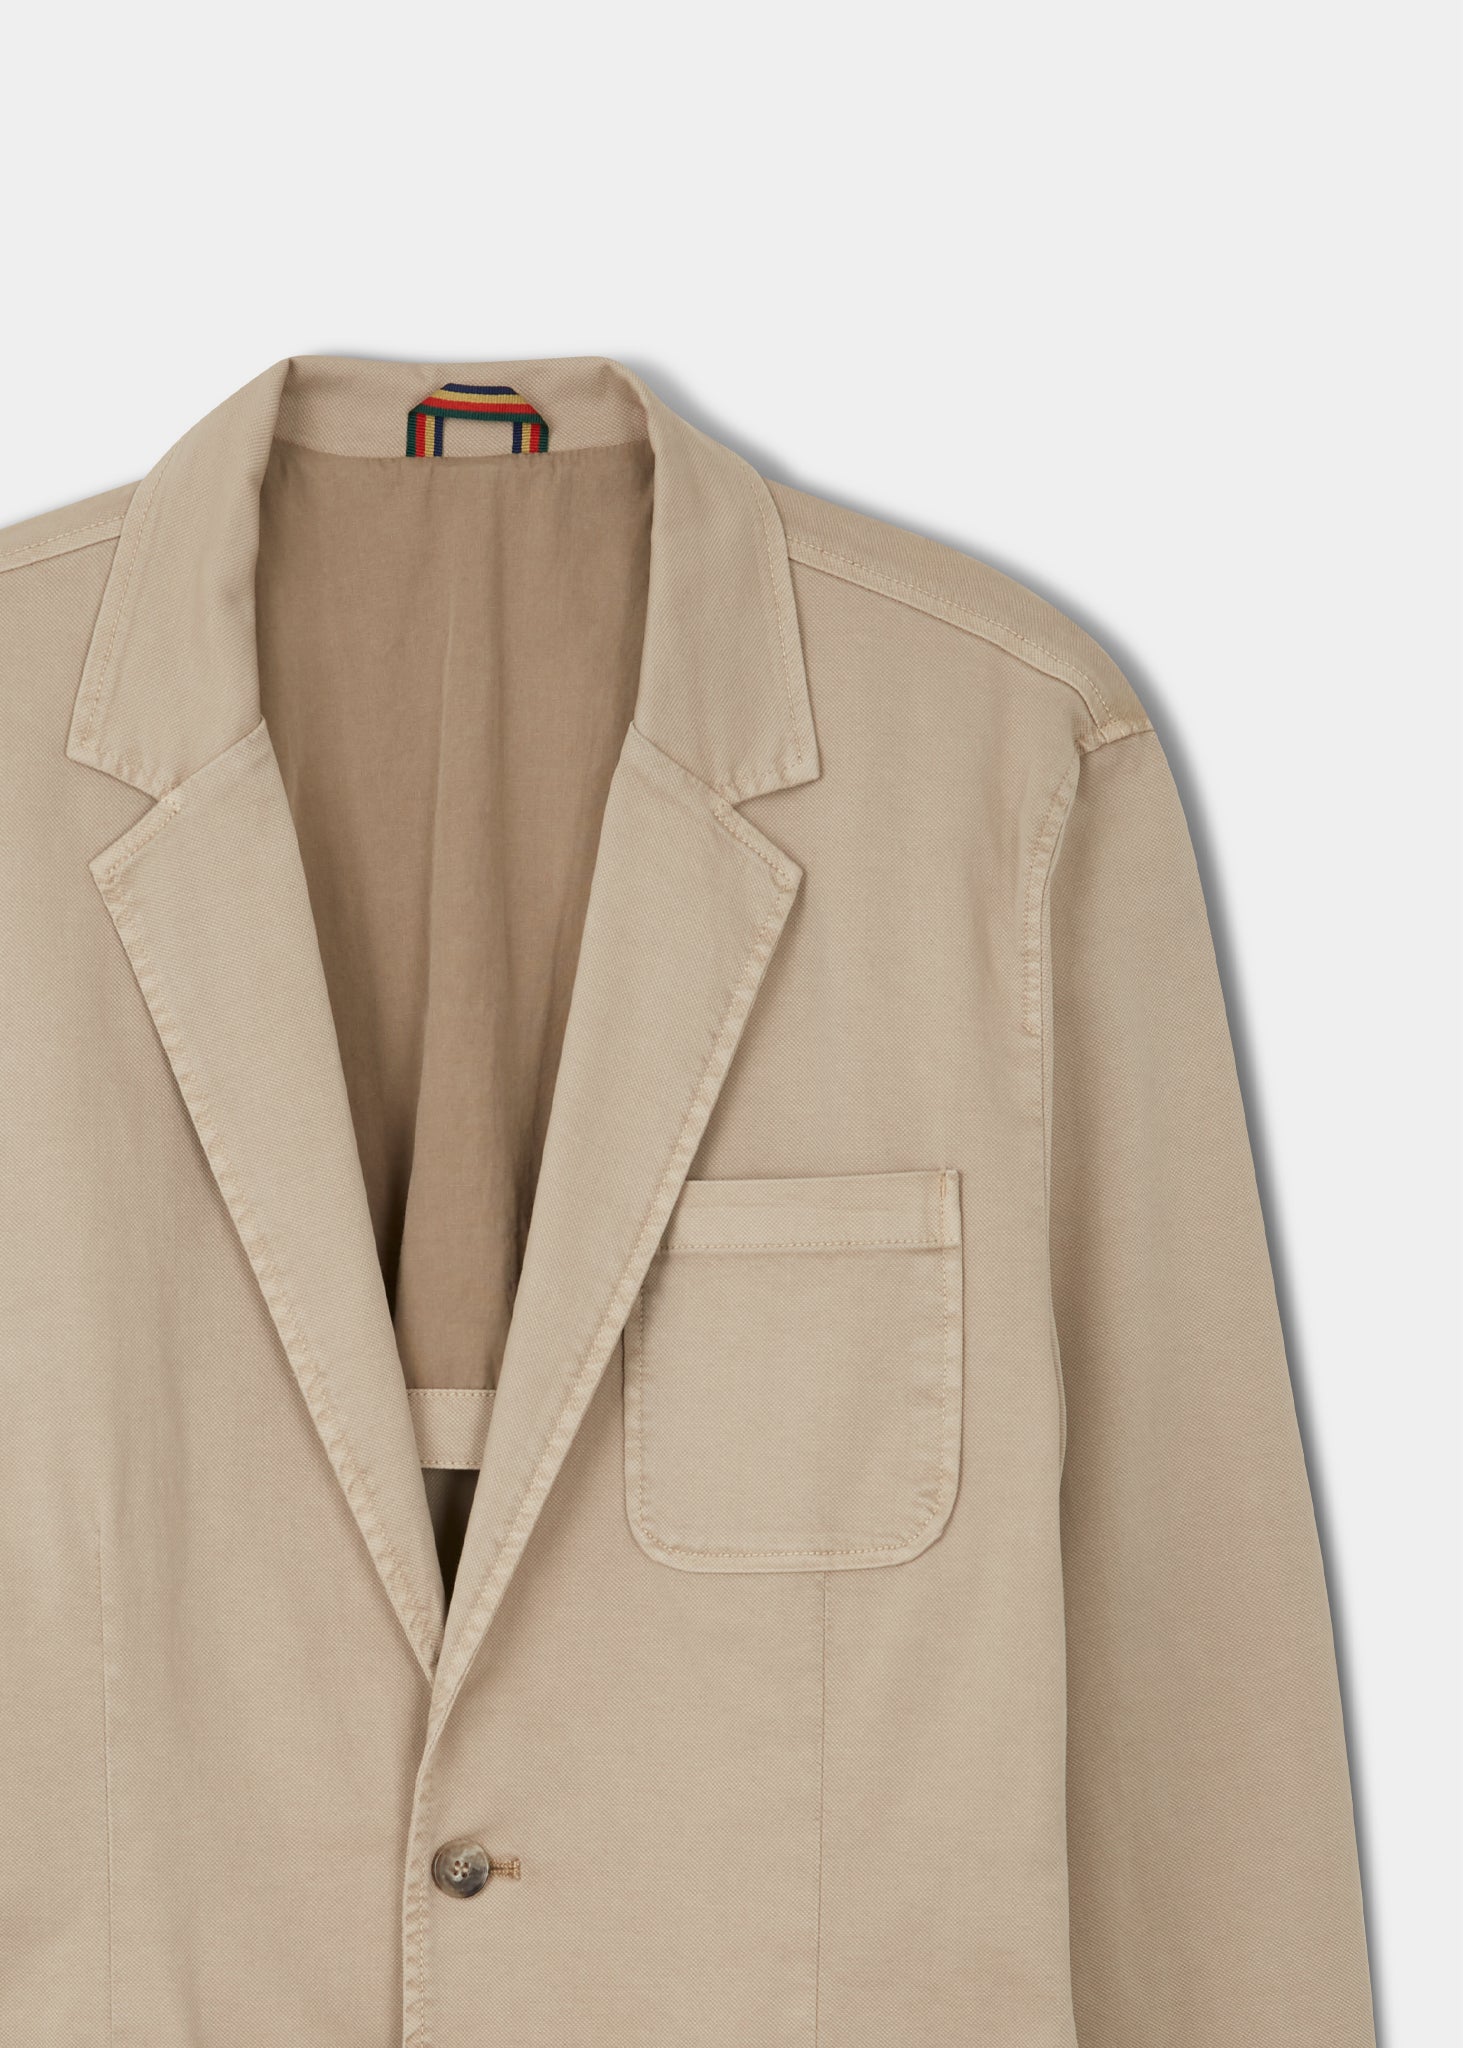 Men's cotton stretch blazer in beige